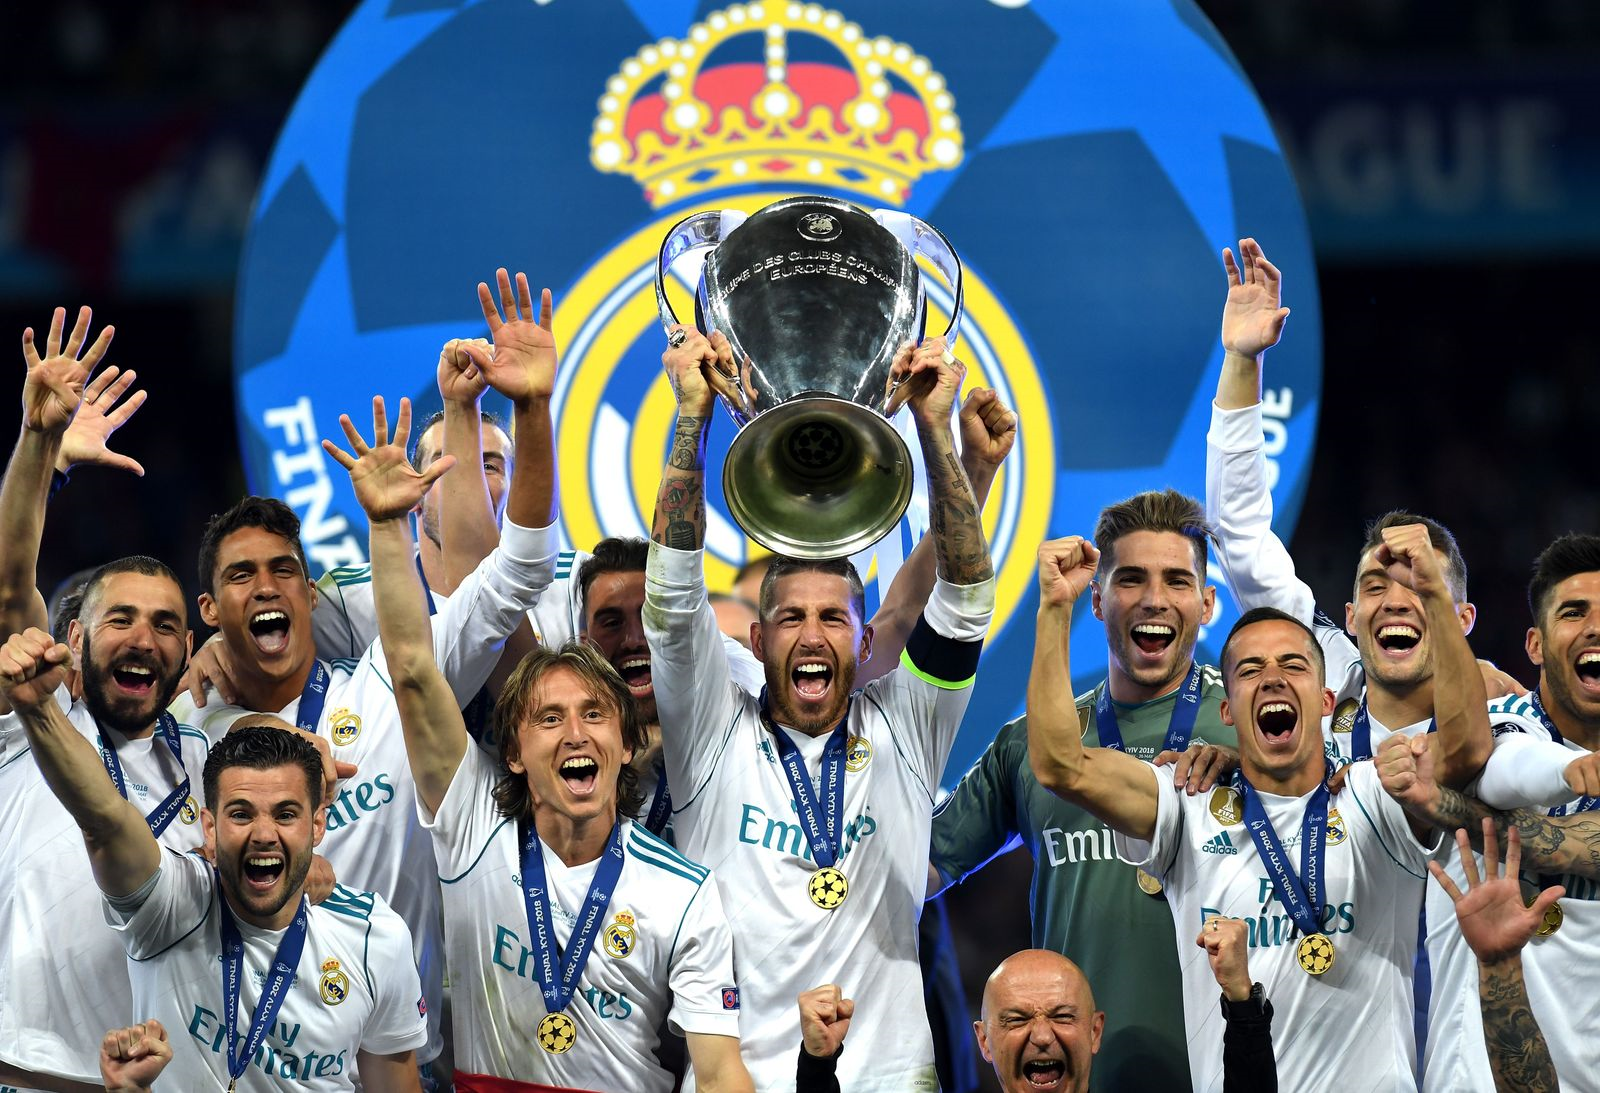 Реал Мадрид победитель Лиги чемпионов. Реал Мадрид чемпион Лиги чемпионов. Реал Мадрид чемпион Лиги чемпионов 2018. Реал Мадрид победитель Лиги чемпионов 2017. Футбольные турниры лига чемпионов